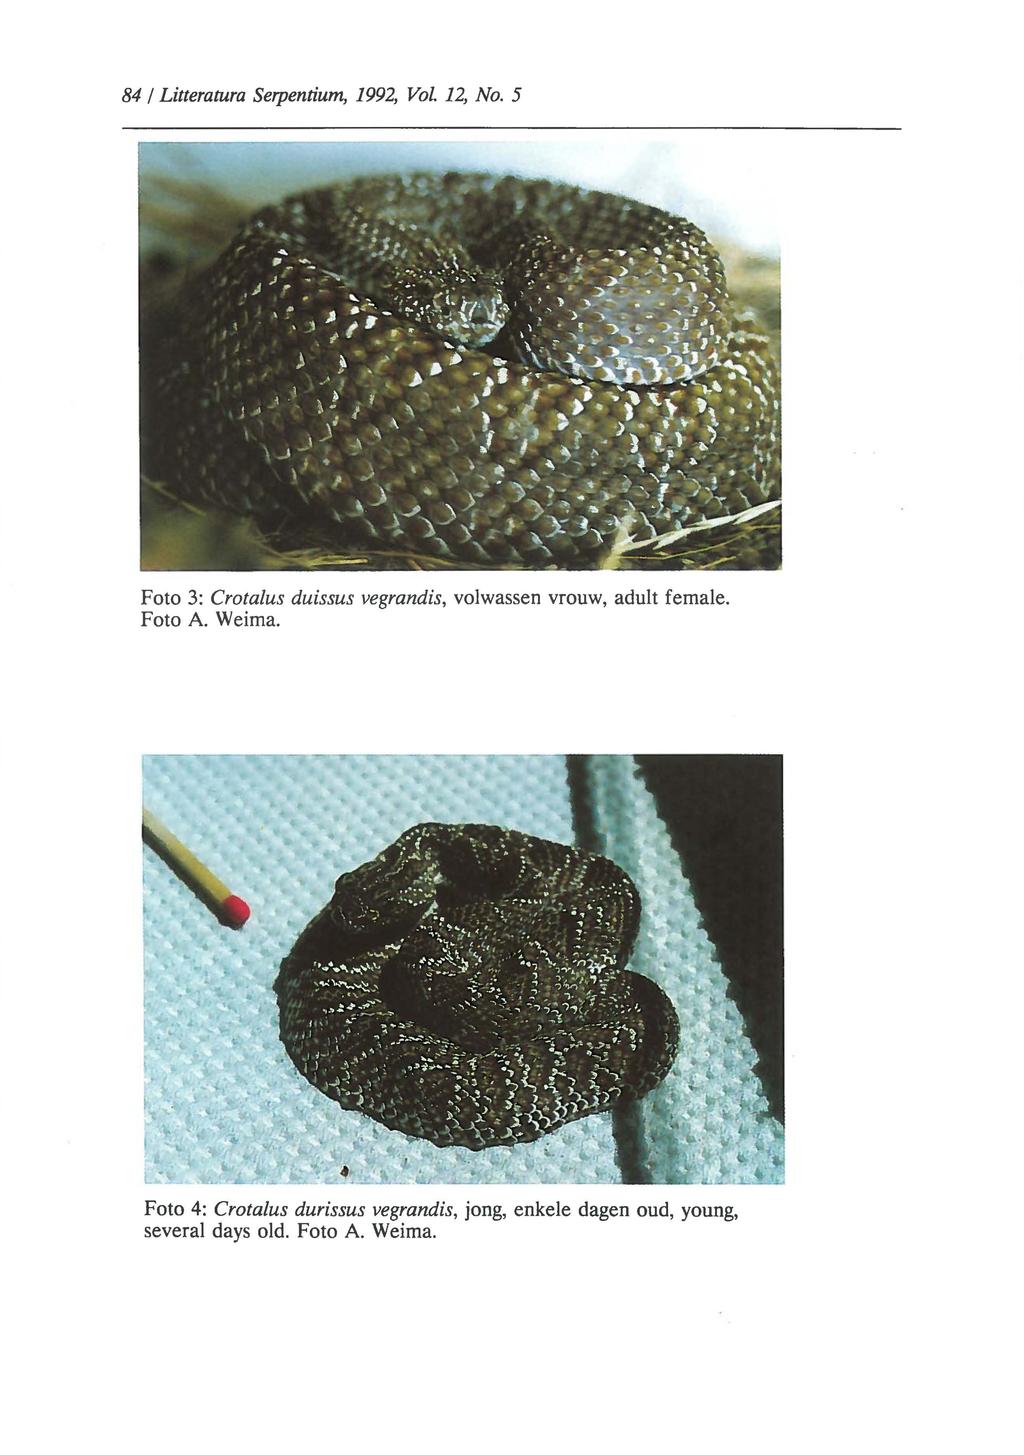 84 I Litteratura Serpentium, 1992, Vol. 12, No. 5 Foto 3: Crotalus duissus vegrandis, volwassen vrouw, adult female.